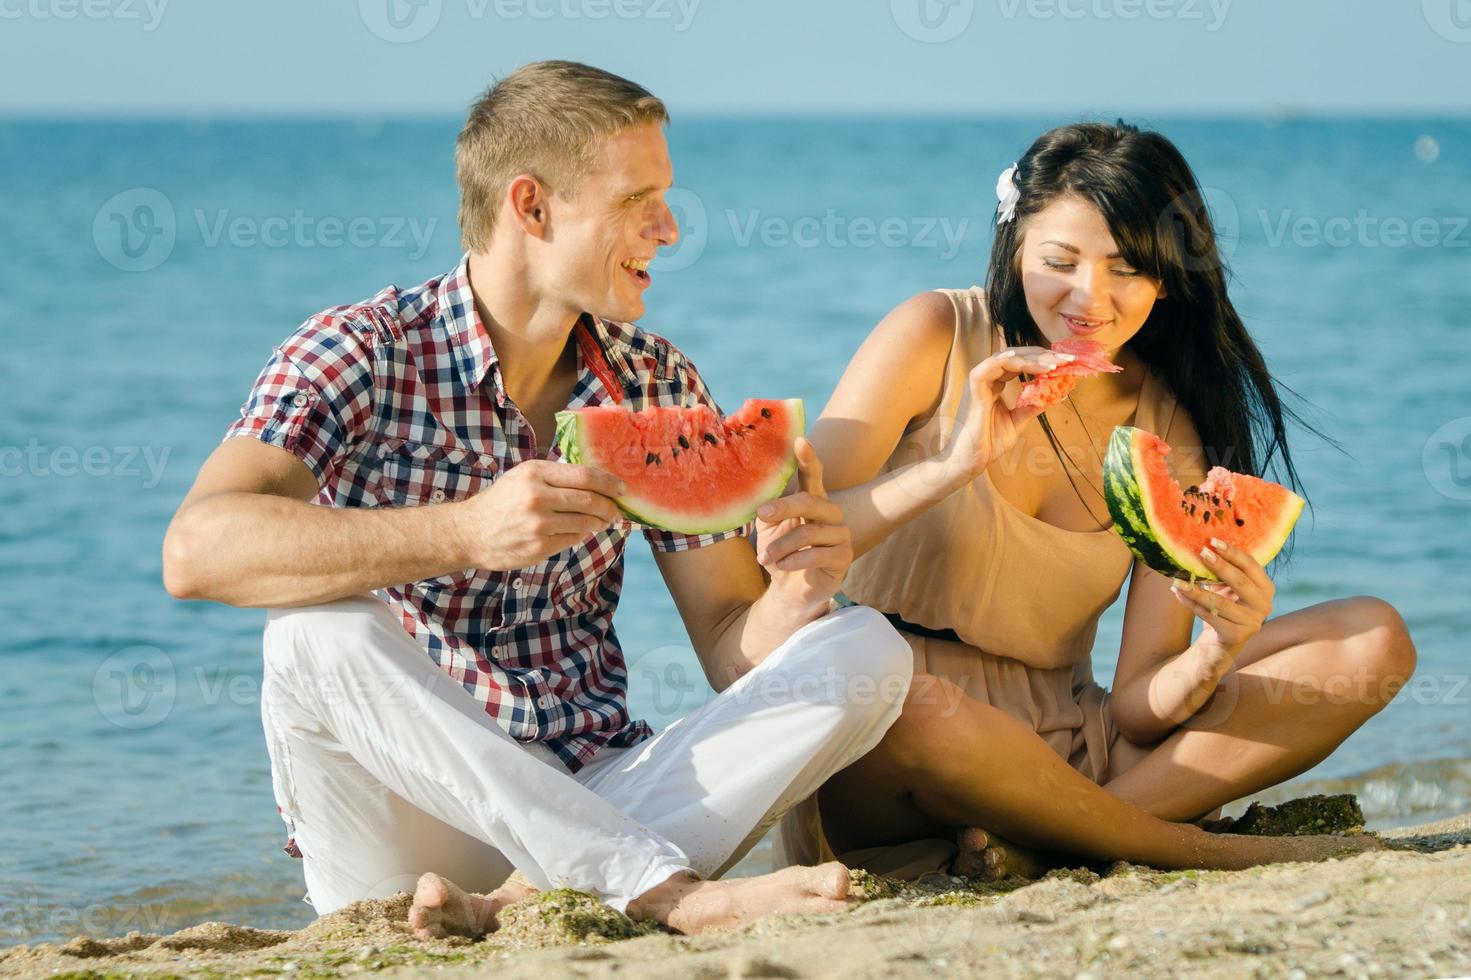 mec et une fille au bord de la mer mangeant une pastèque mûre photo